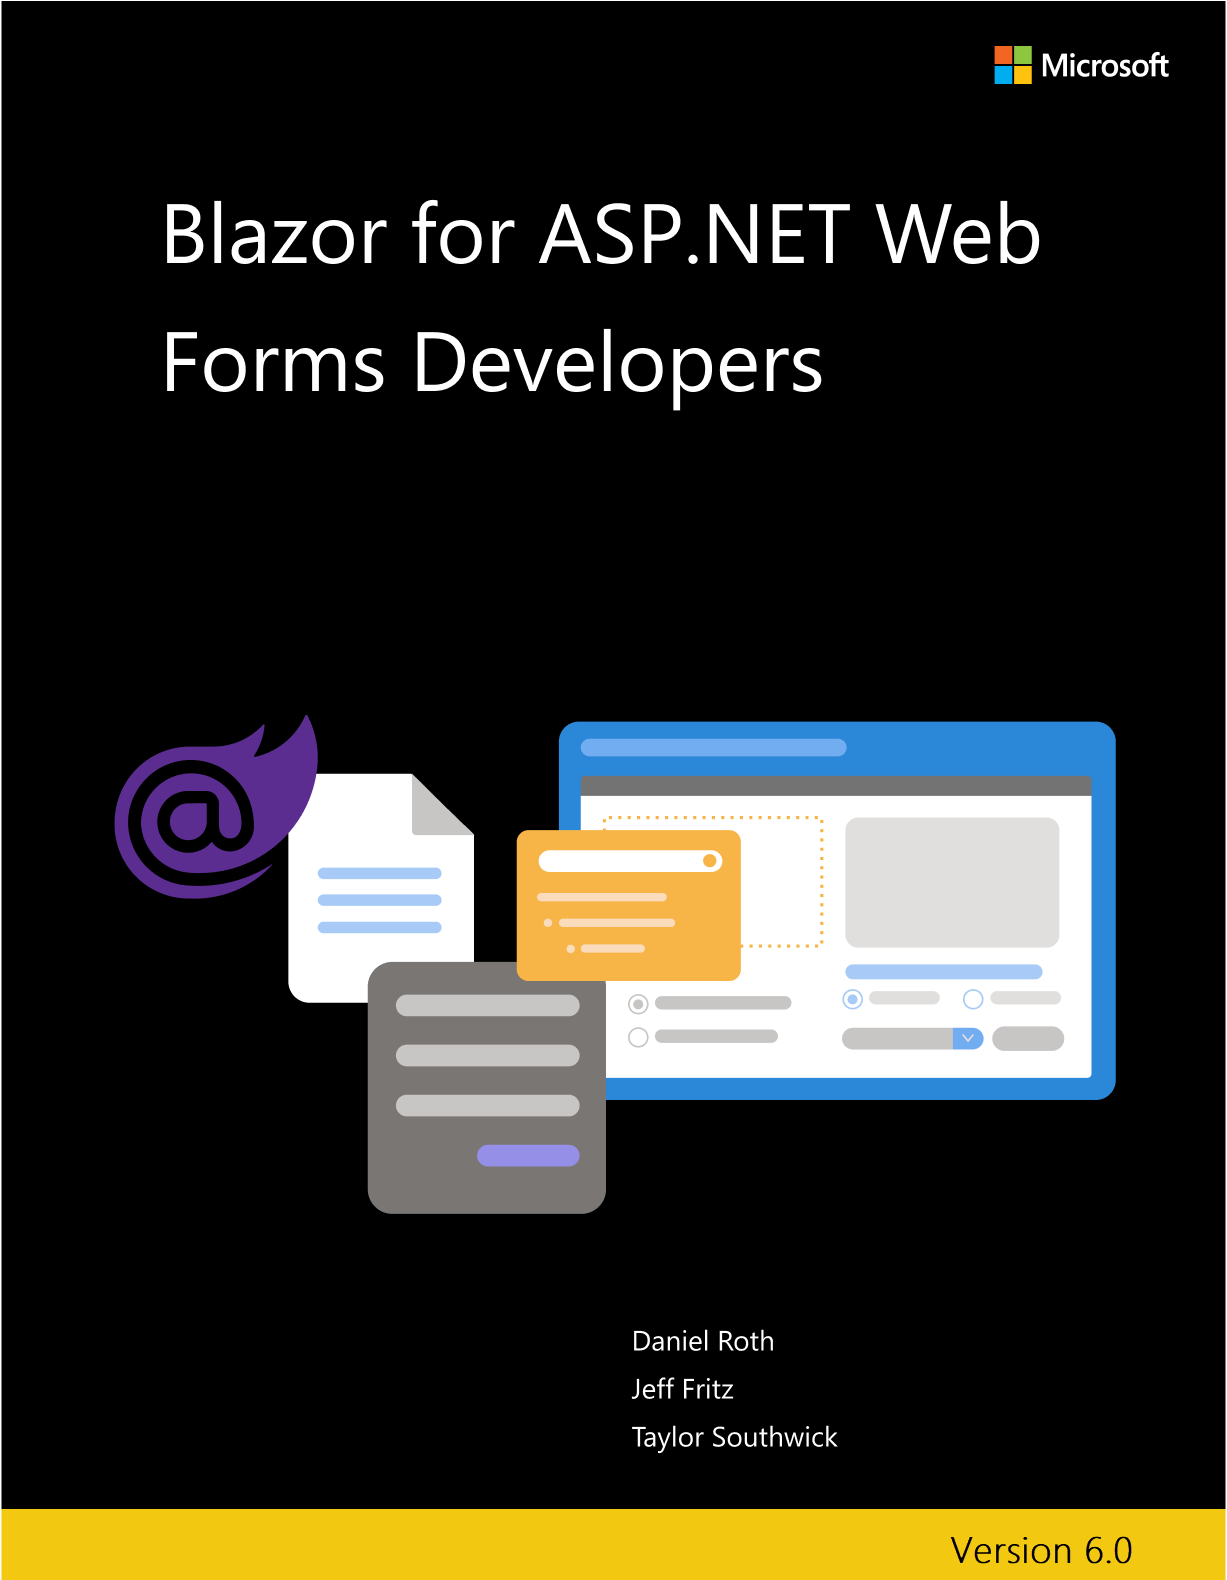 BlazorCapa do livro eletrônico para desenvolvedores do ASP.NET Web Forms.